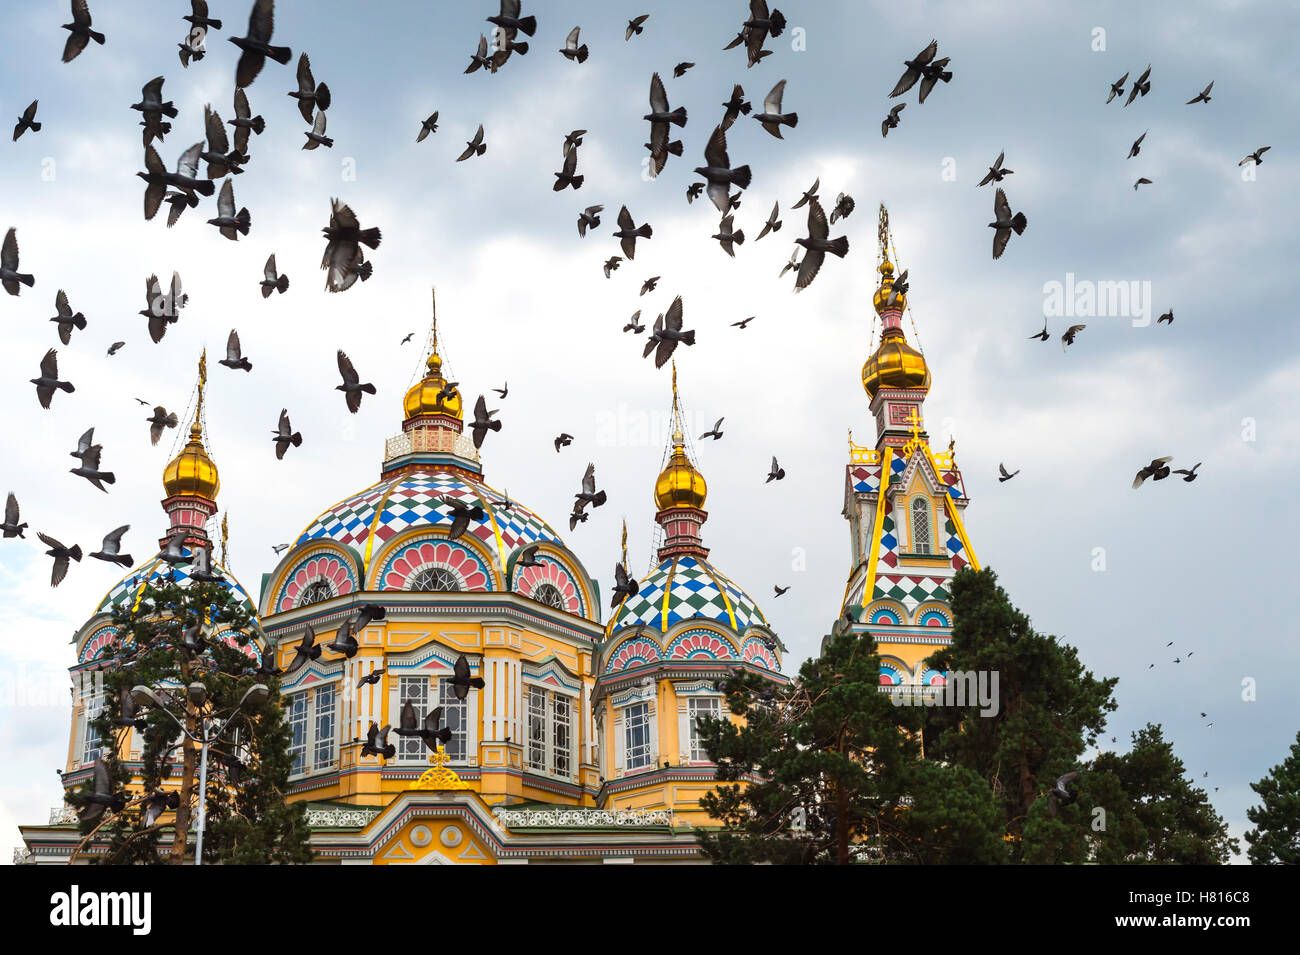 Tauben fliegen über die Himmelfahrt Kathedrale oder Zenkov Kathedrale, Panfilov Park, Almaty, Kasachstan, Zentralasien Stockfoto